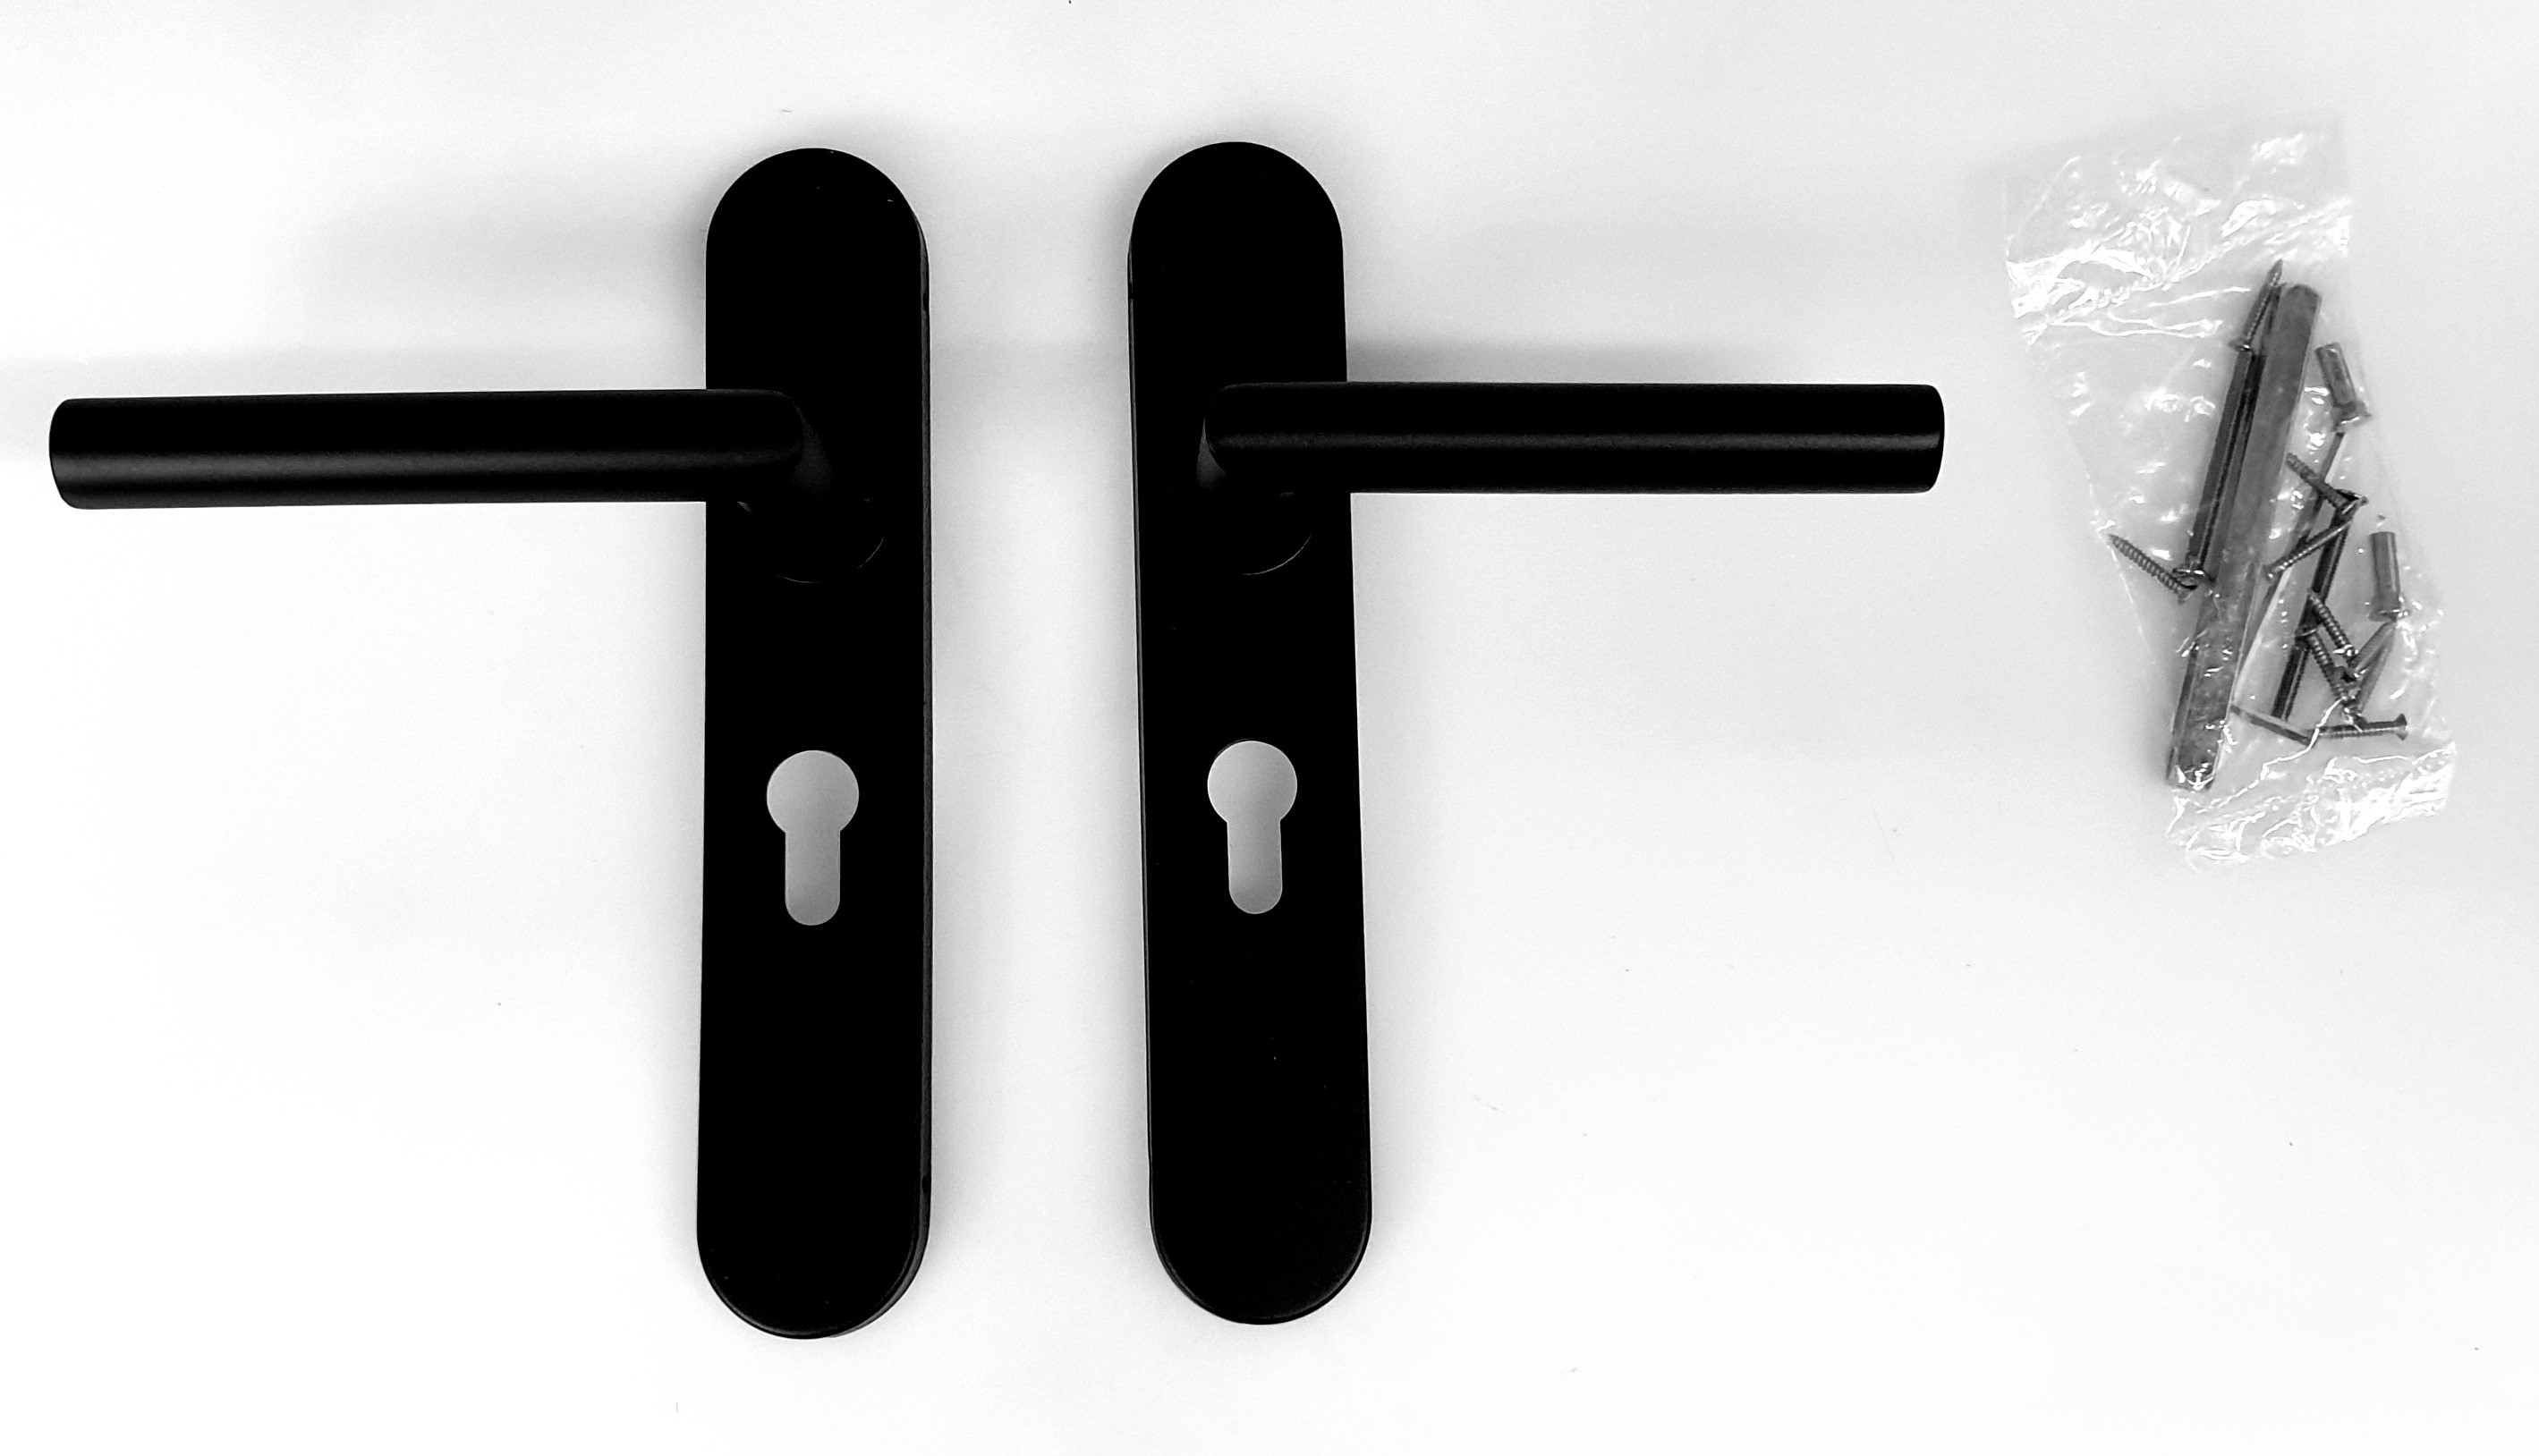 Deurkrukgarnituur, L-model haaks, vast gemonteerd op langschild 225x40mm, in kleur zwart met structuur, cilindergat pc55